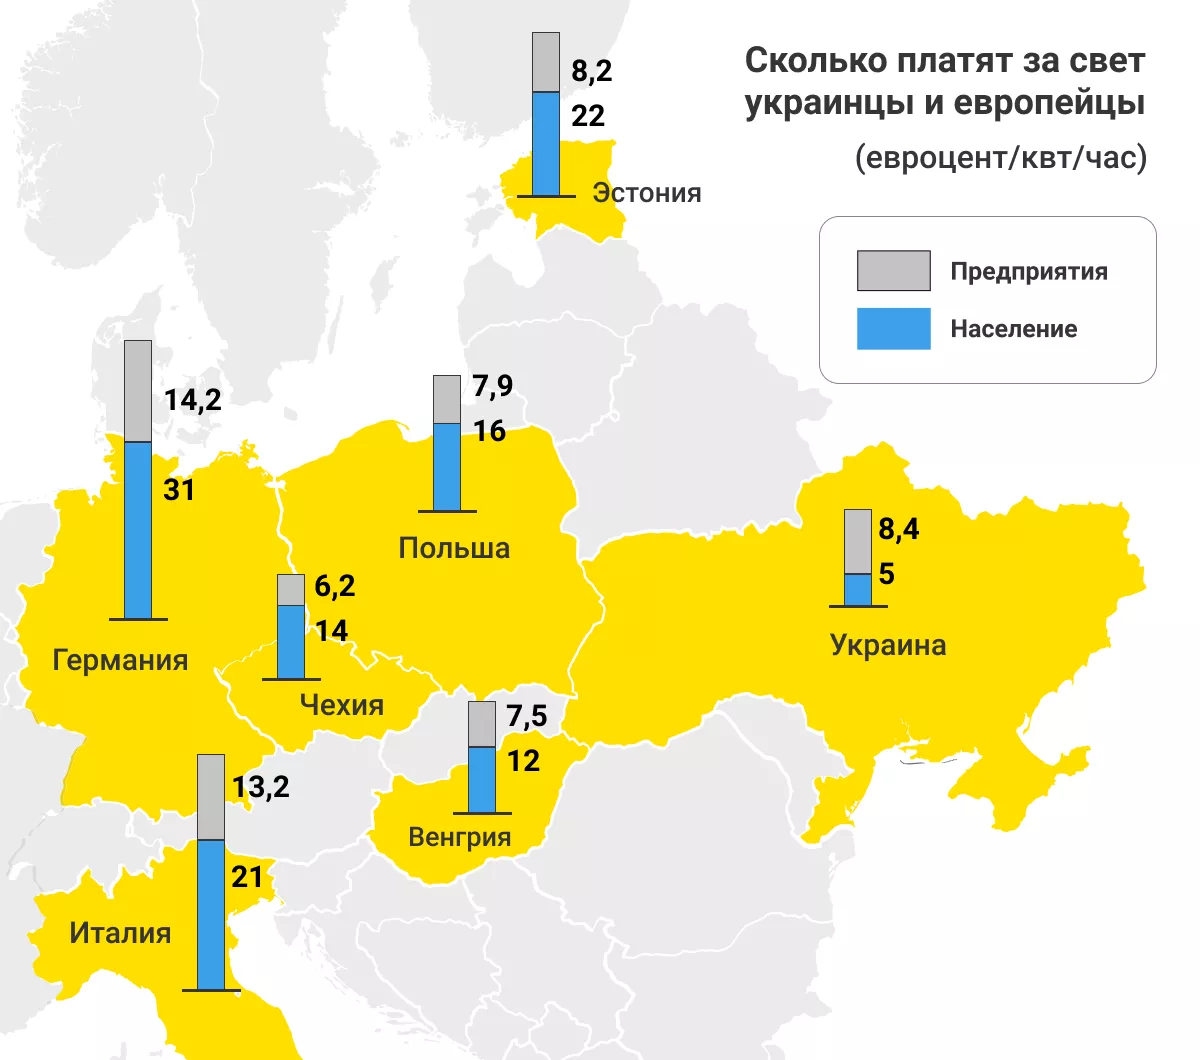 Сколько платят за свет украинцы и европейцы (евроцент/кВт/ч)